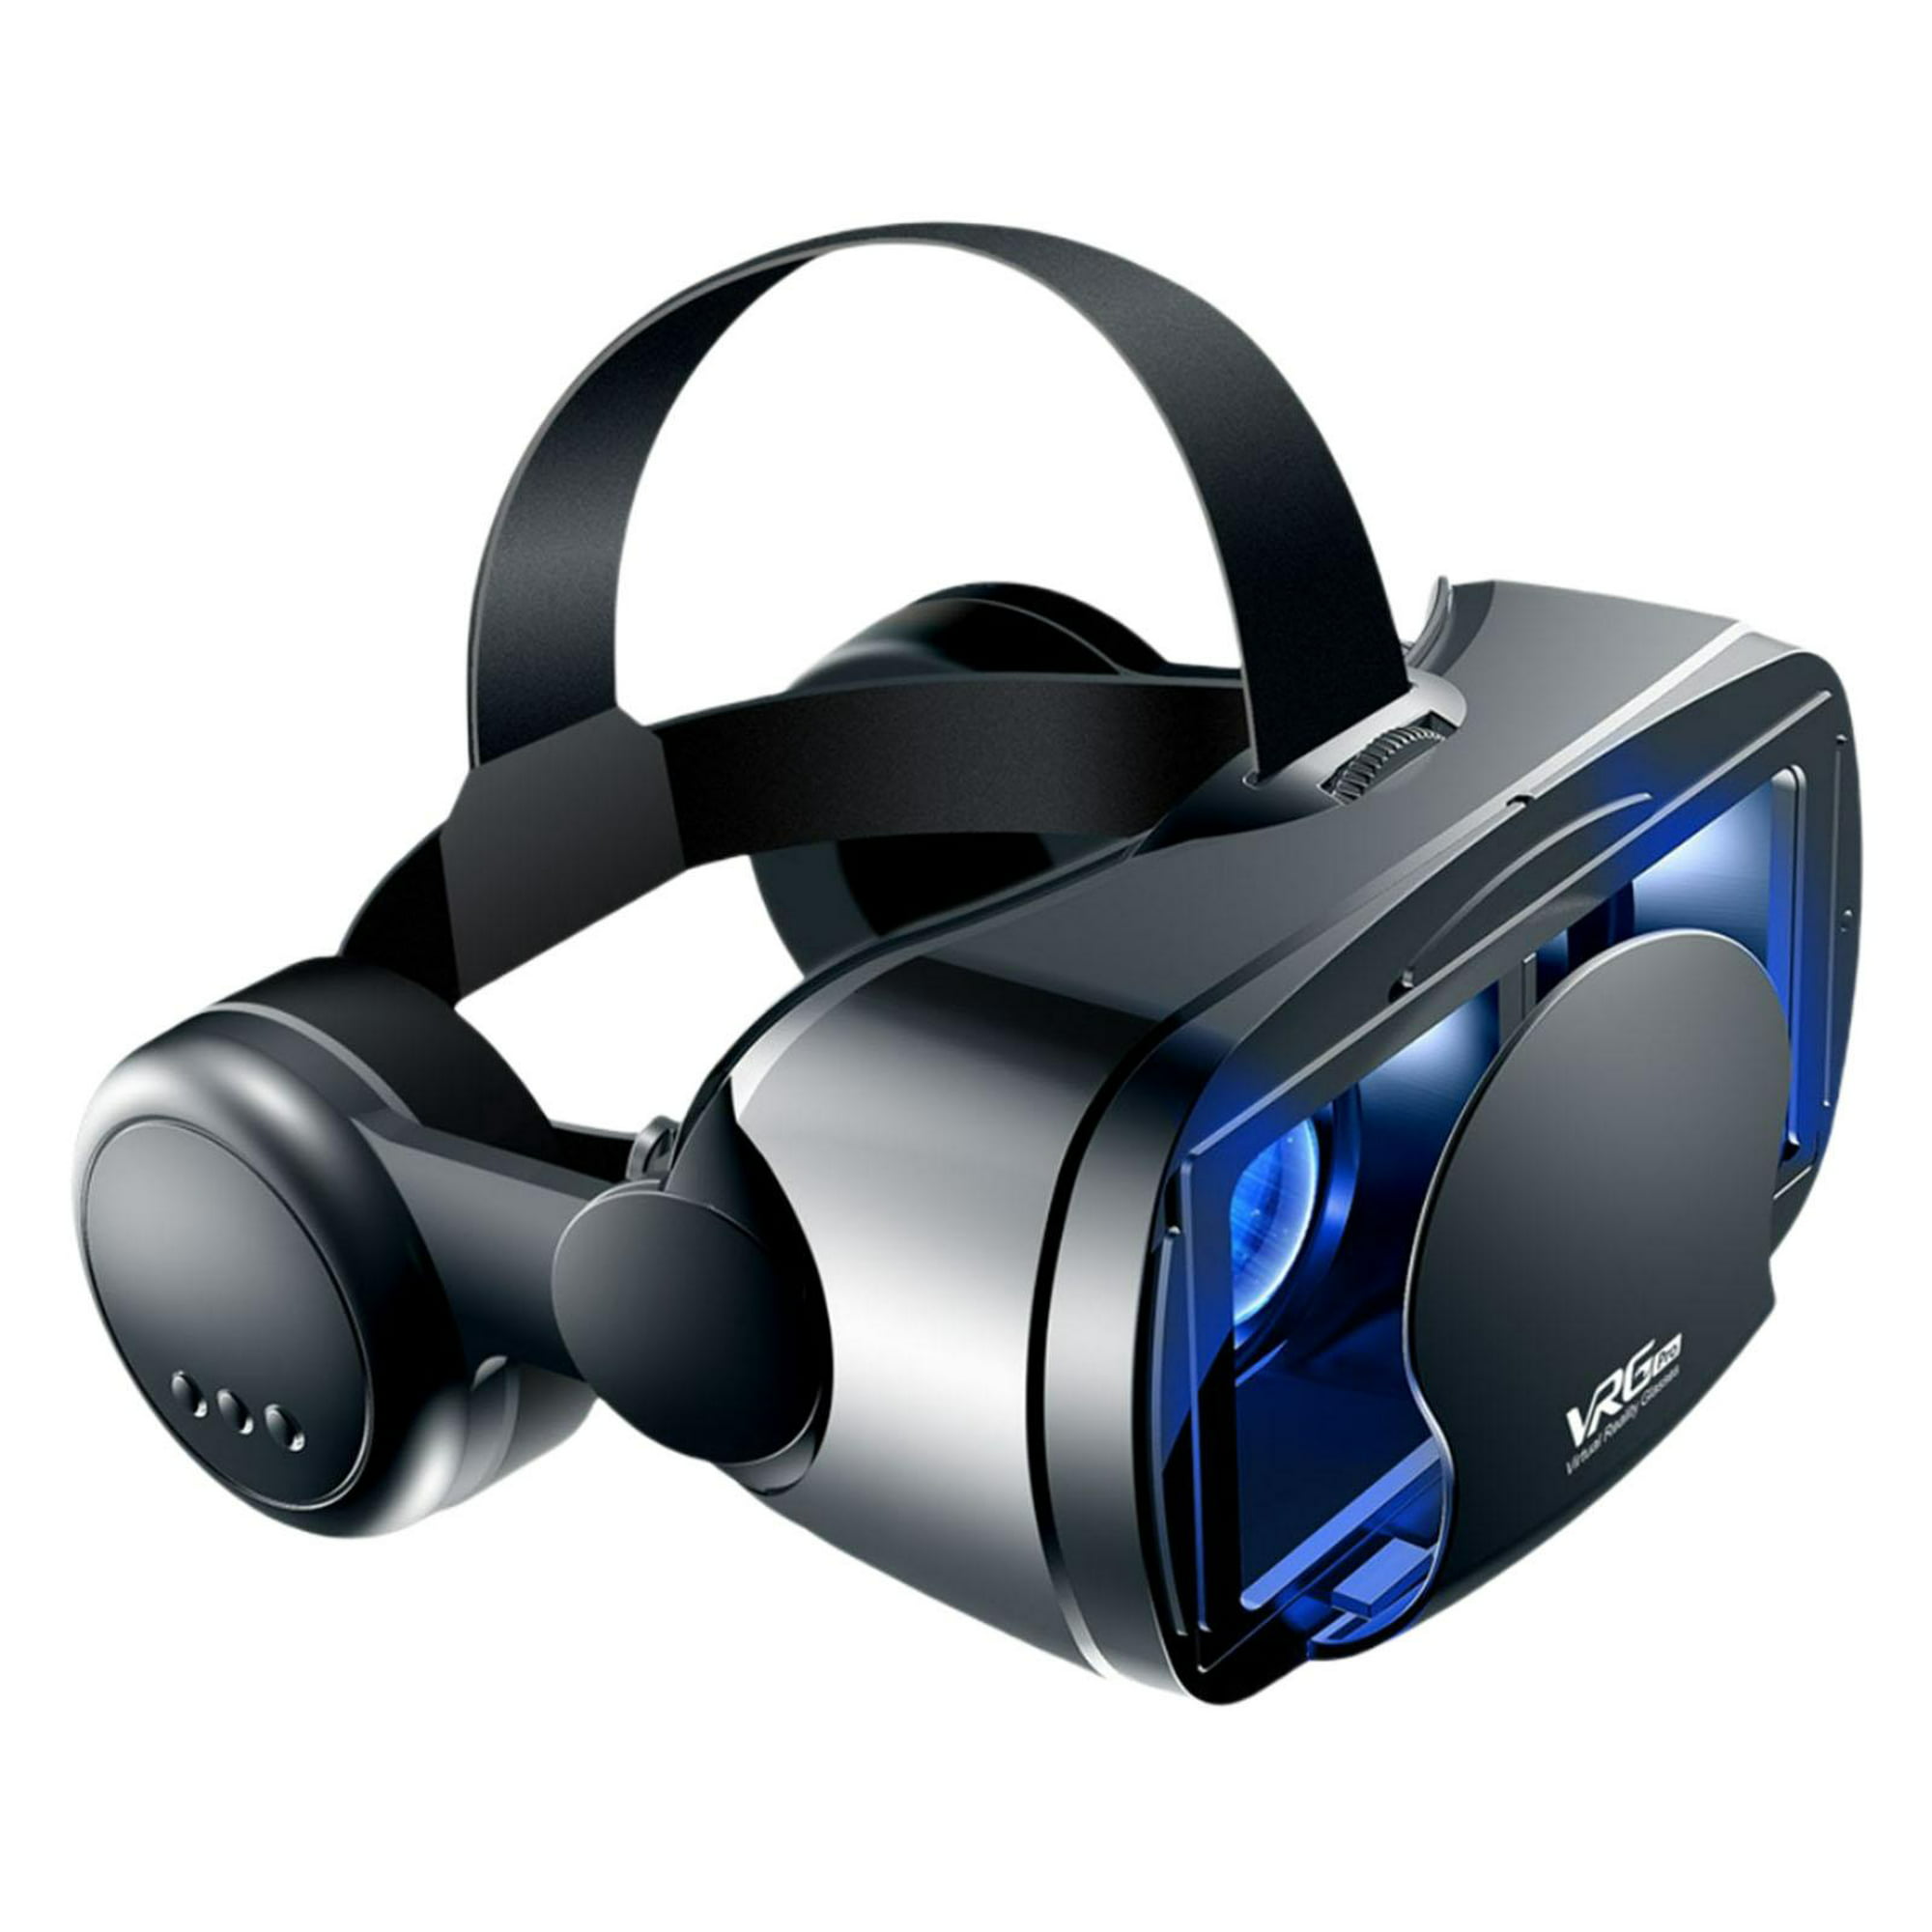 Gafas de VR, cine de realidad virtual 3D, juegos de VR y películas 3D para  teléfonos inteligentes iOS y Android, gafas de VR para niños y adultos